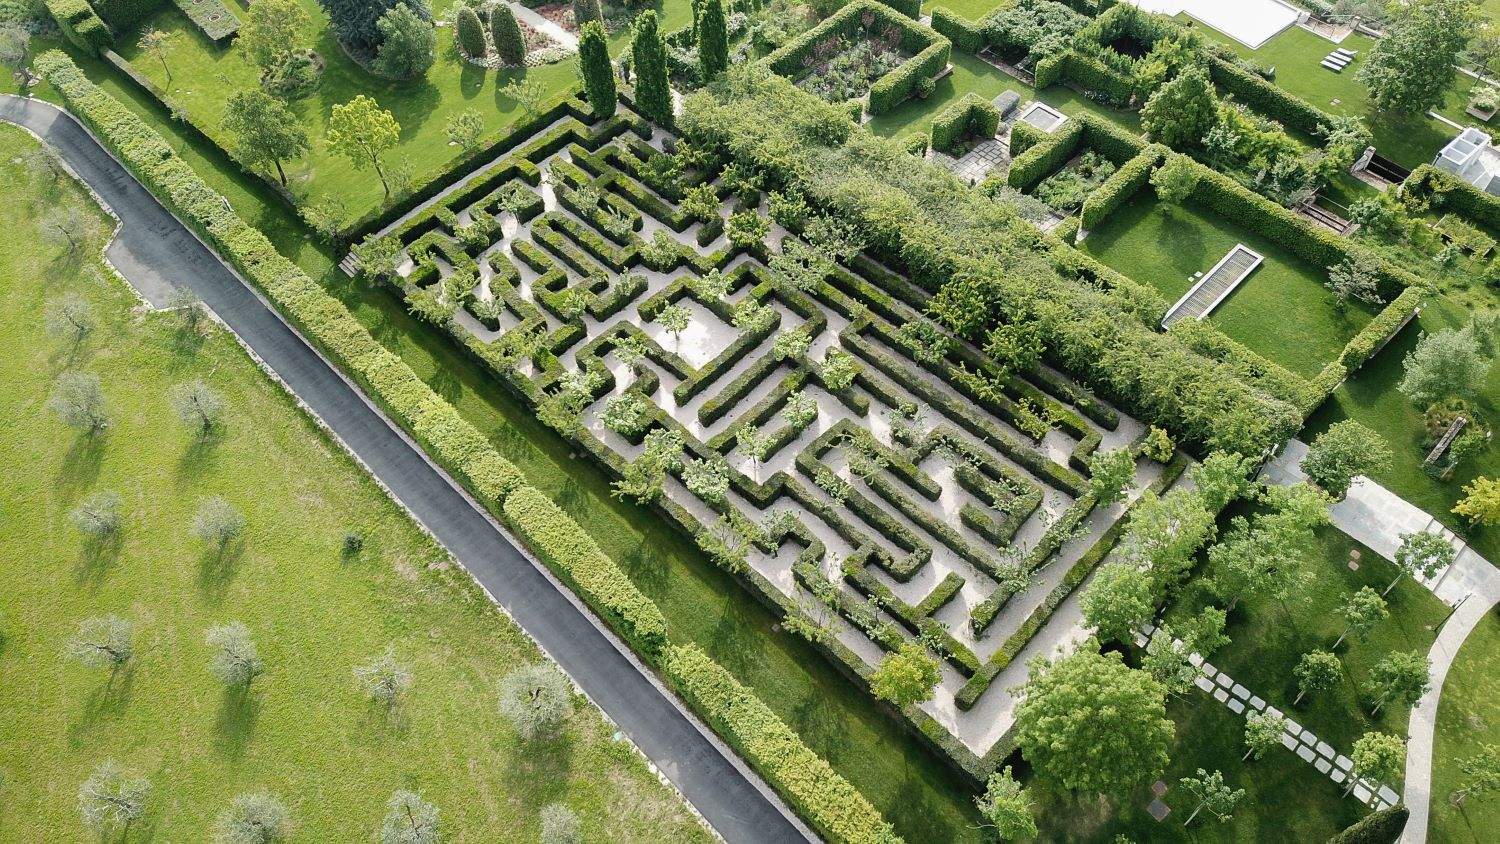 Le labyrinthe de Carlico, un labyrinthe dans le verger des collines de Bologne